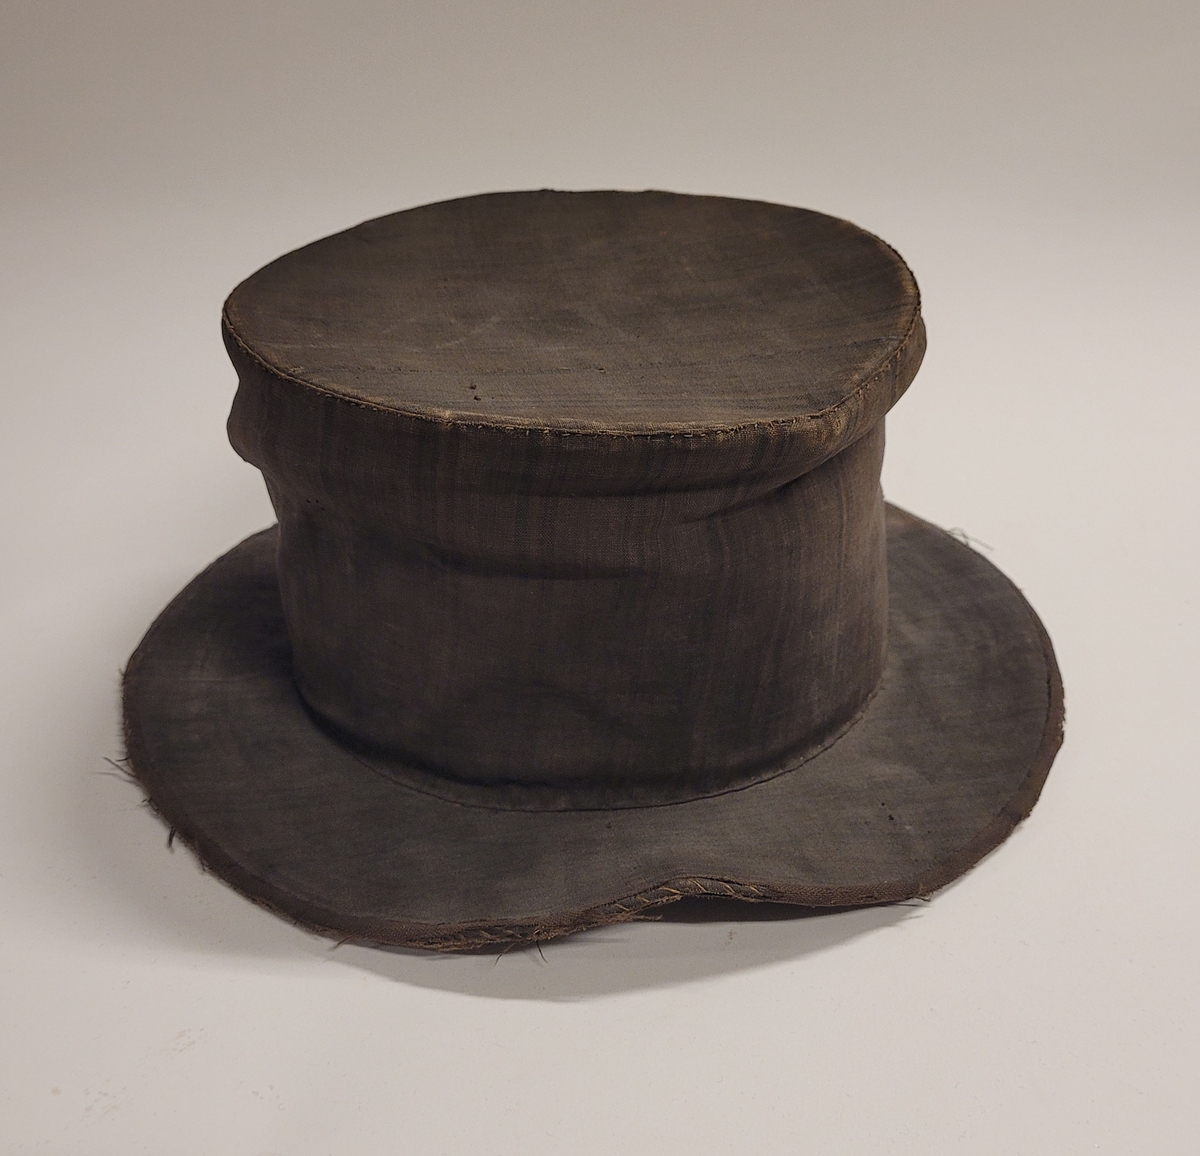 Hög hatt med brätten, överdragen med mörkt randigt linnetyg i fyra färger, övervägande brunt. Svettrem längs insidan av svart läder. Fodrad med vit lärft. Skullen uppbyggd av halm.